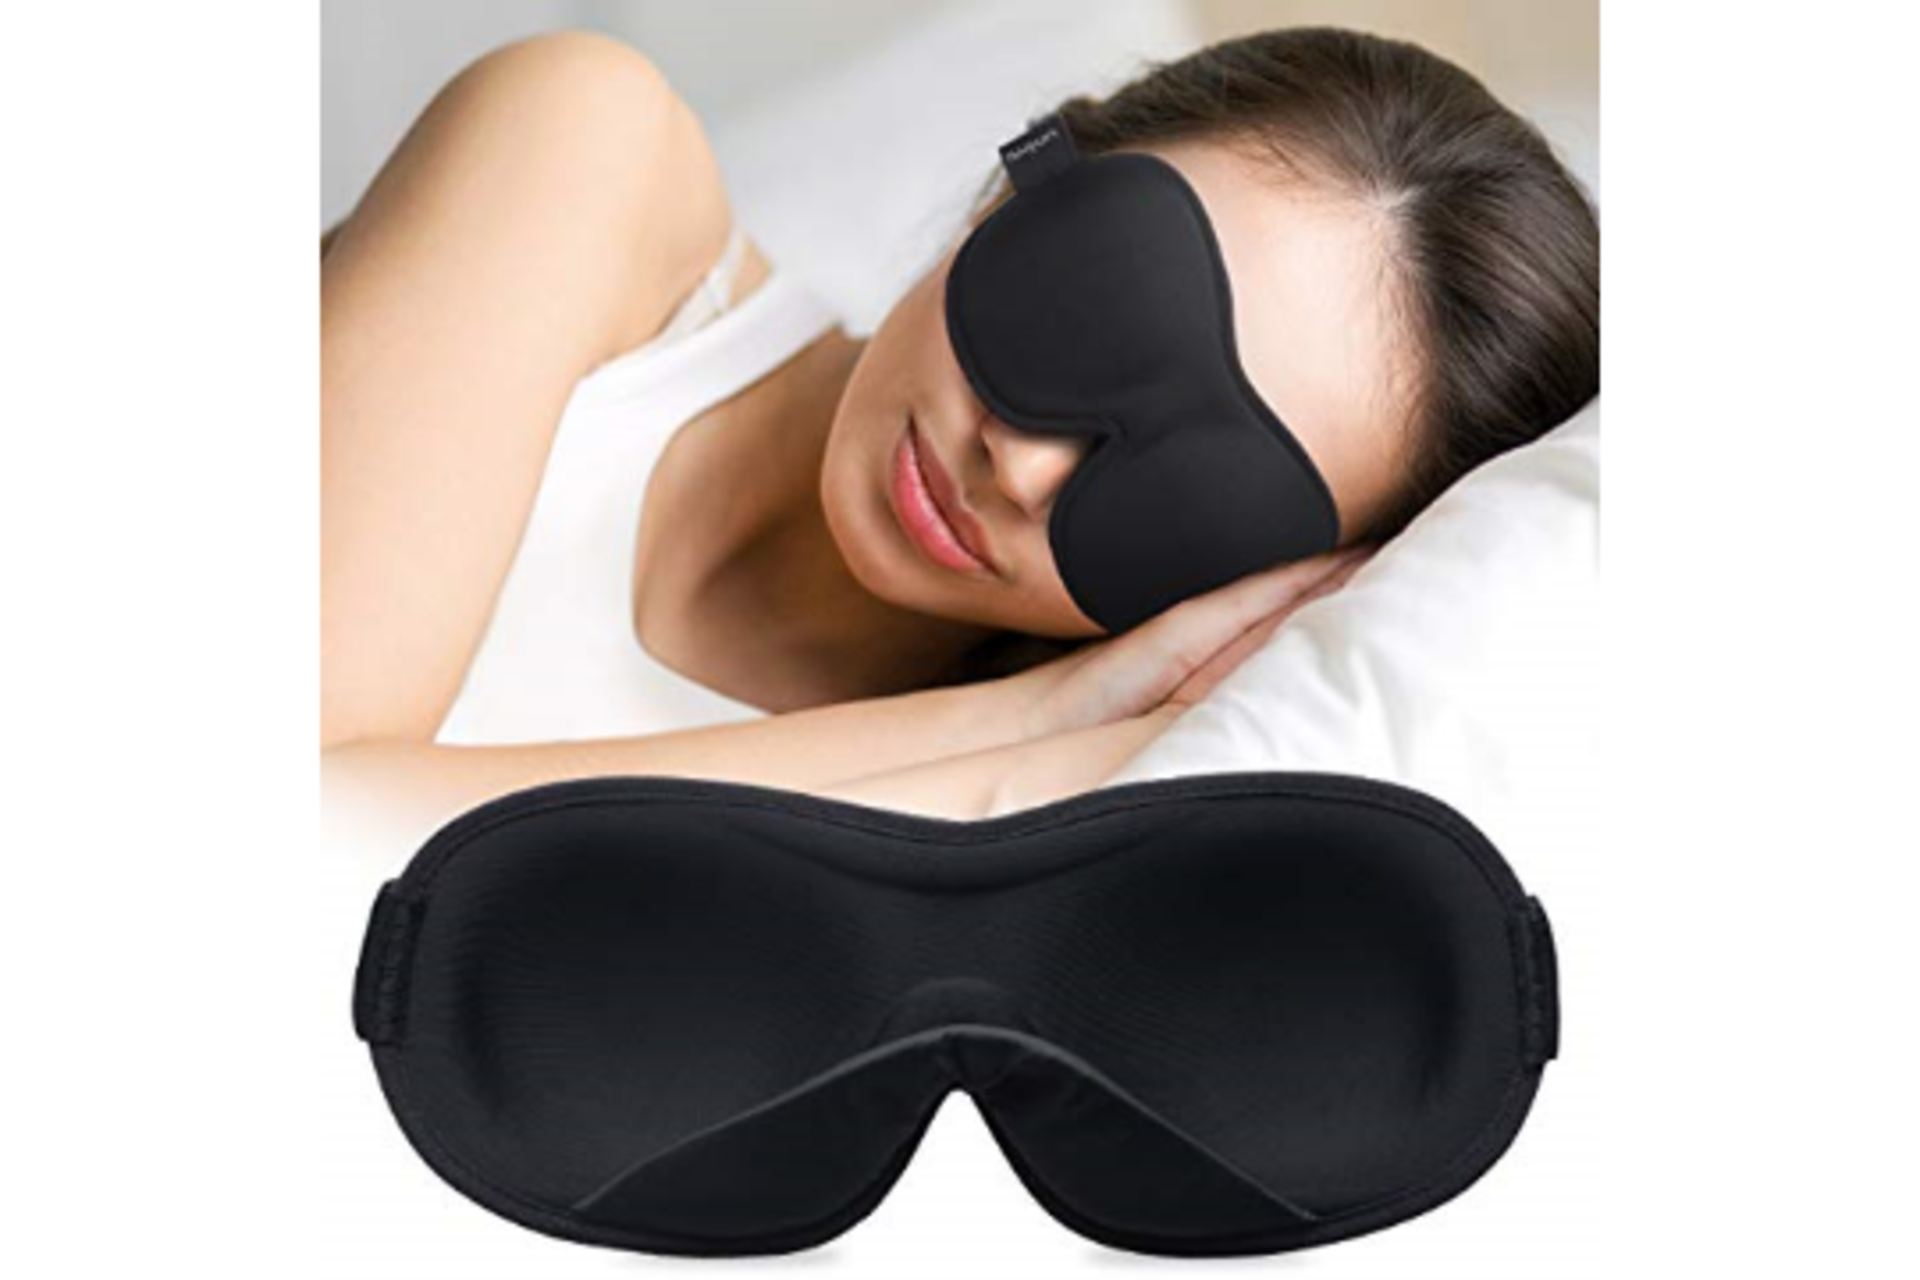 x2 New Umini Sleep Mask - RRP £15.99 EACH